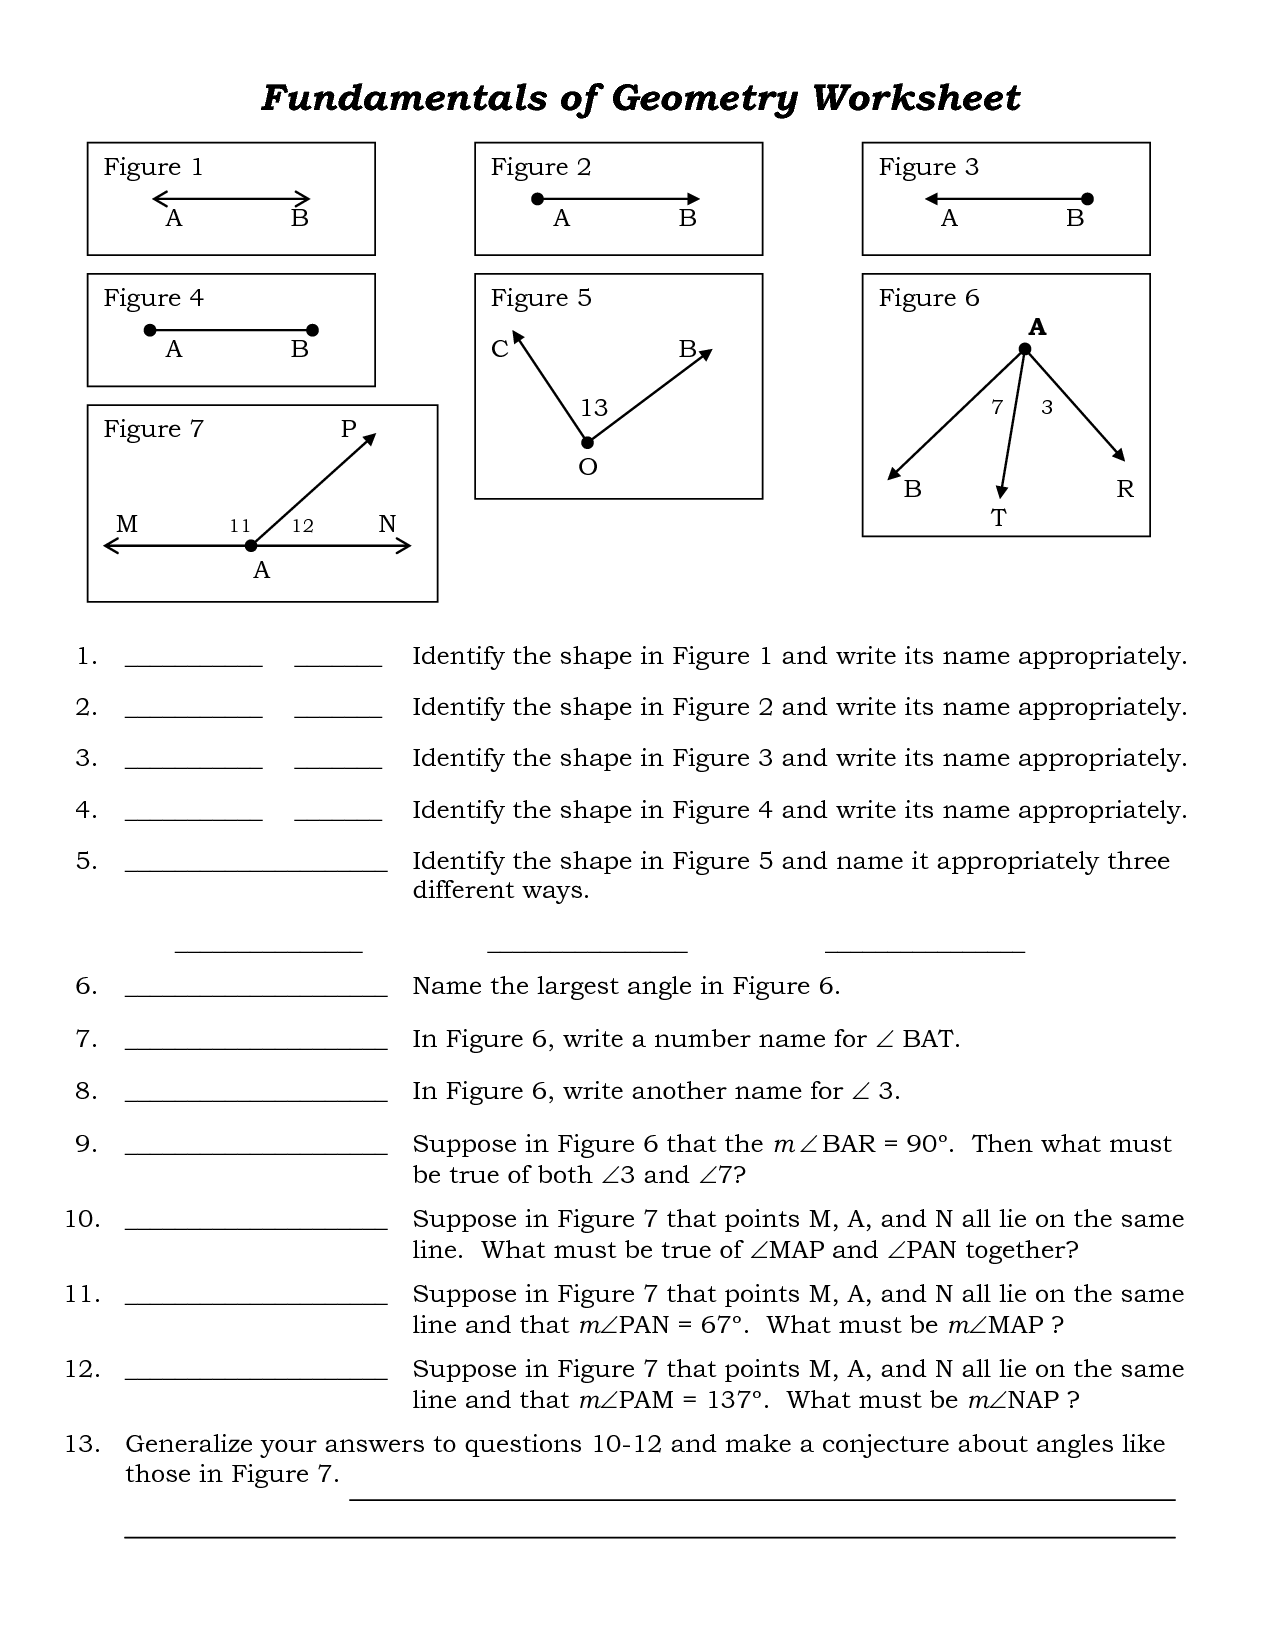 free-high-school-math-worksheet-from-funmathscom-high-school-math